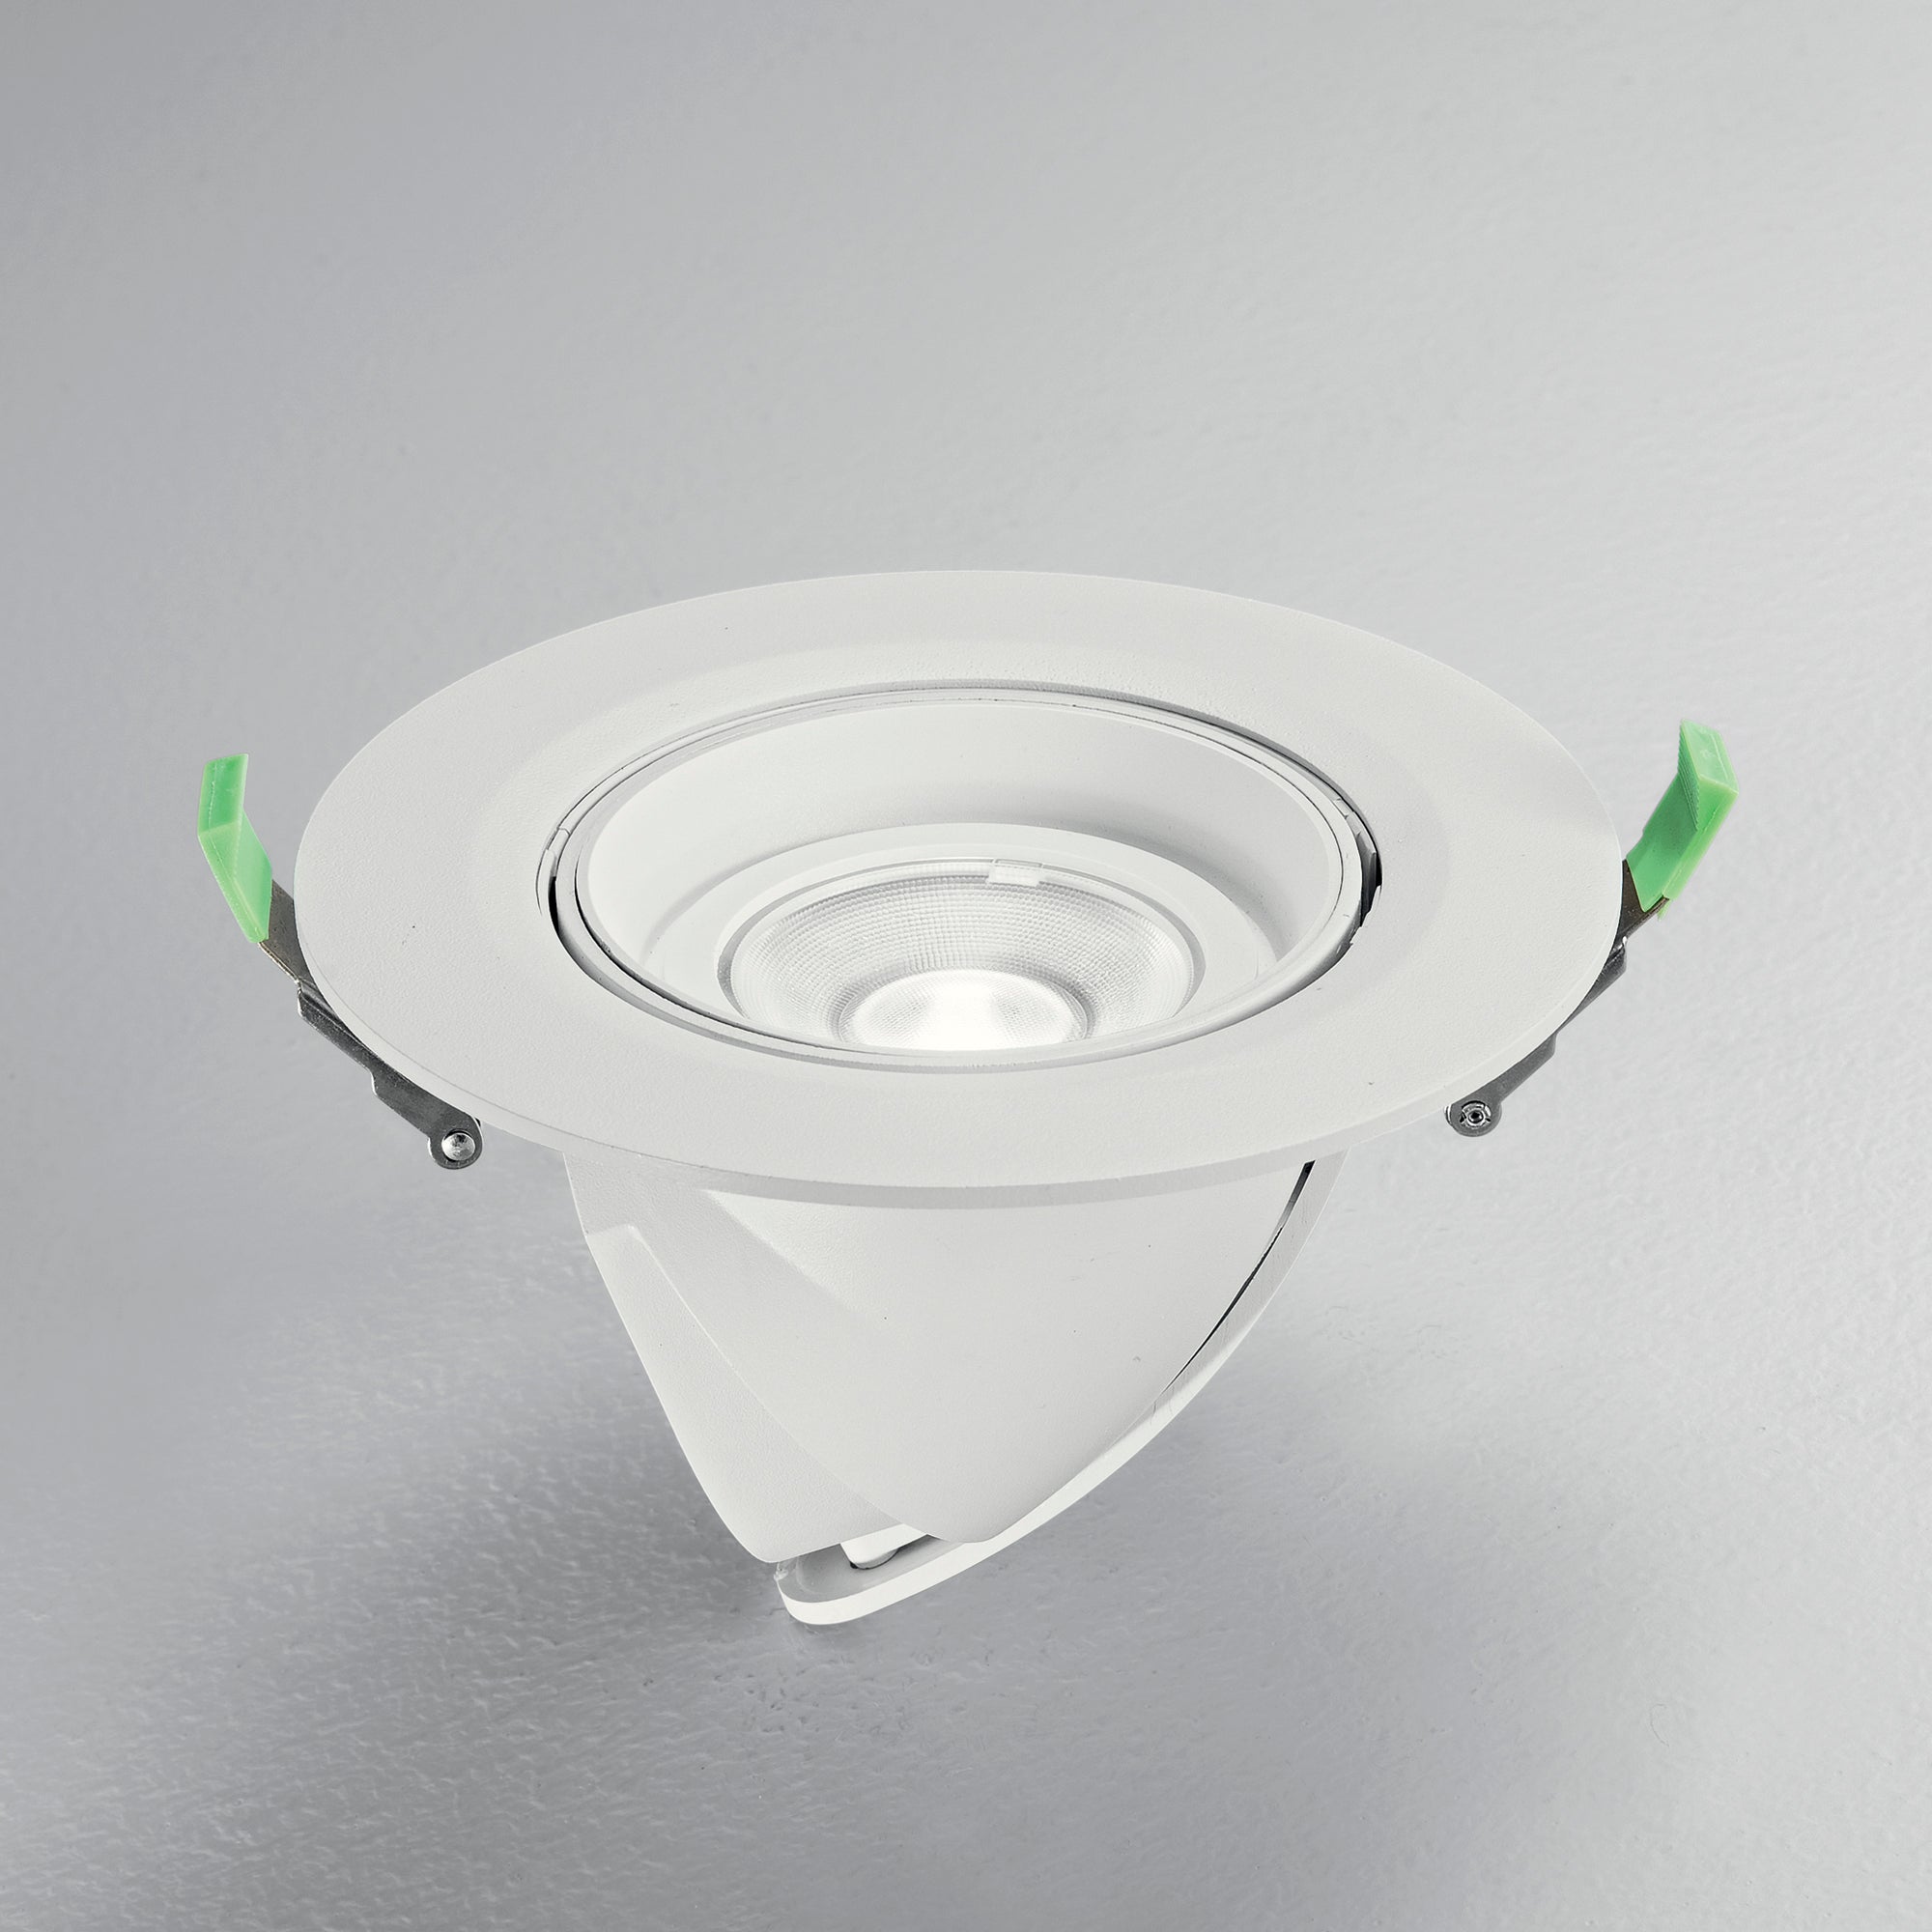 Downlight LED DELTA de aluminio, con interruptor CCT para cambiar la temperatura de color